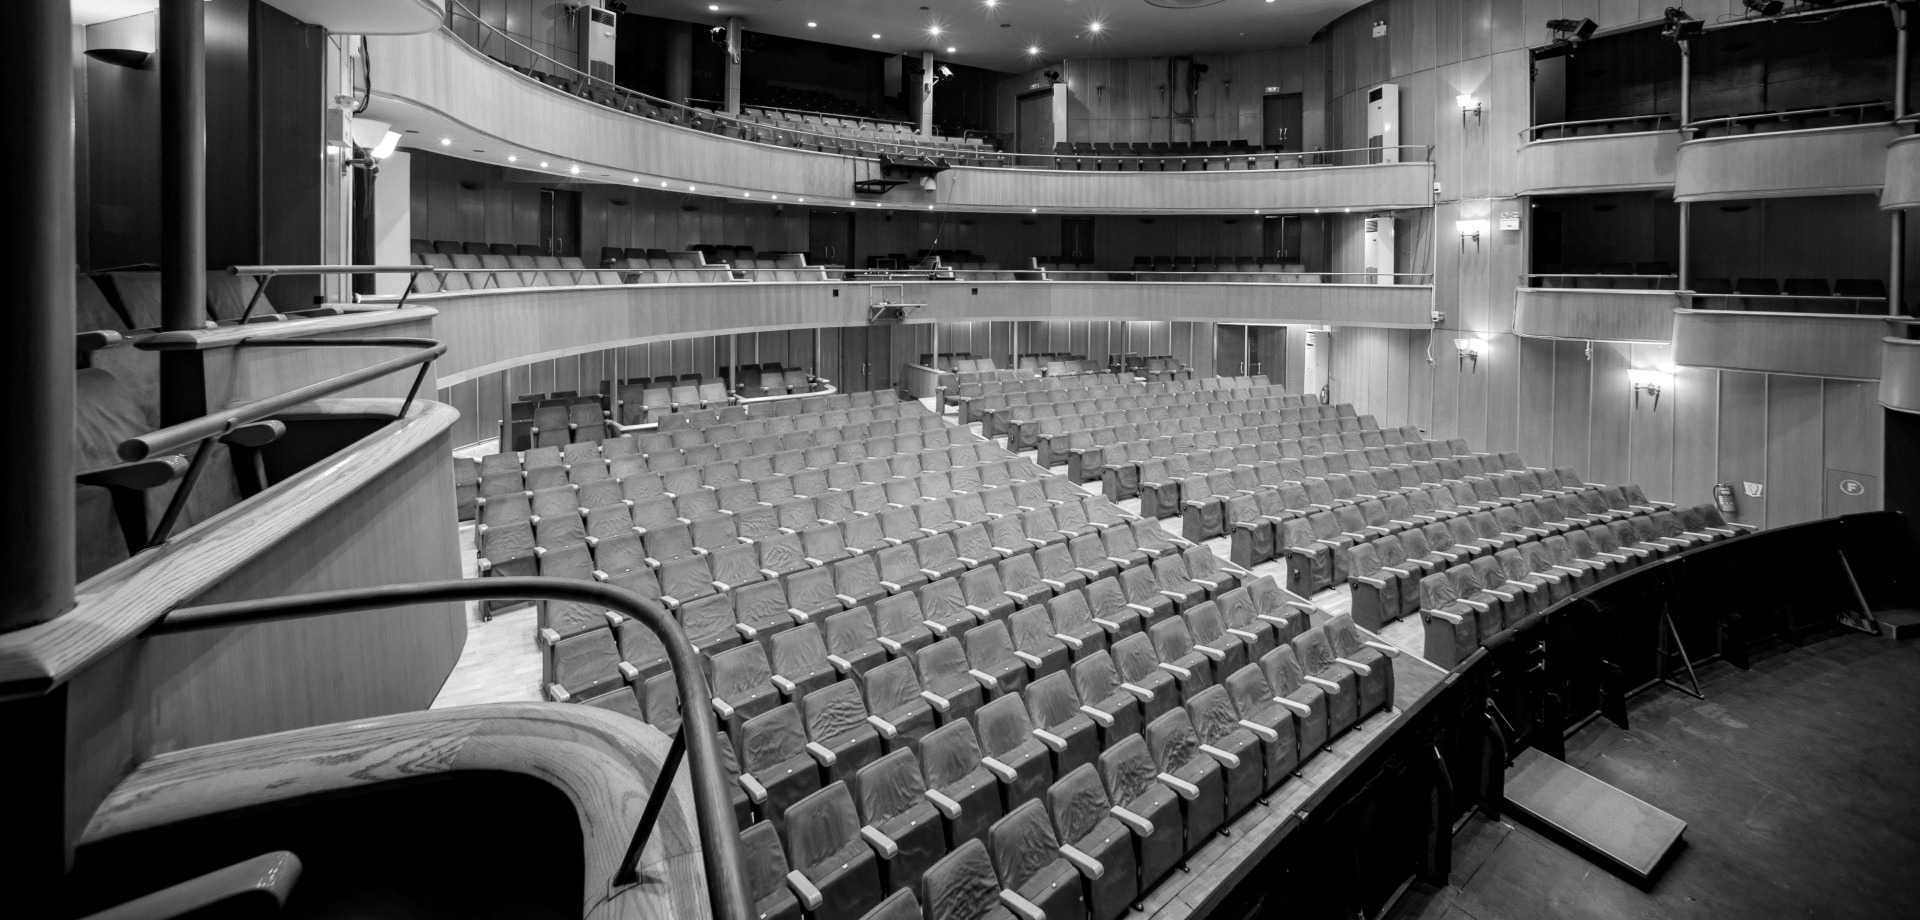 Ολύμπια, Δημοτικό Μουσικό Θέατρο Μαρία Κάλλας: Στις 3 Δεκεμβρίου η πρεμιέρα του Δημοτικού Μουσικού Θεάτρου της Αθήνας, «Μαρία Κάλλας» - ελcblog - Θέατρο - Χορός - Μουσική - elculture.gr